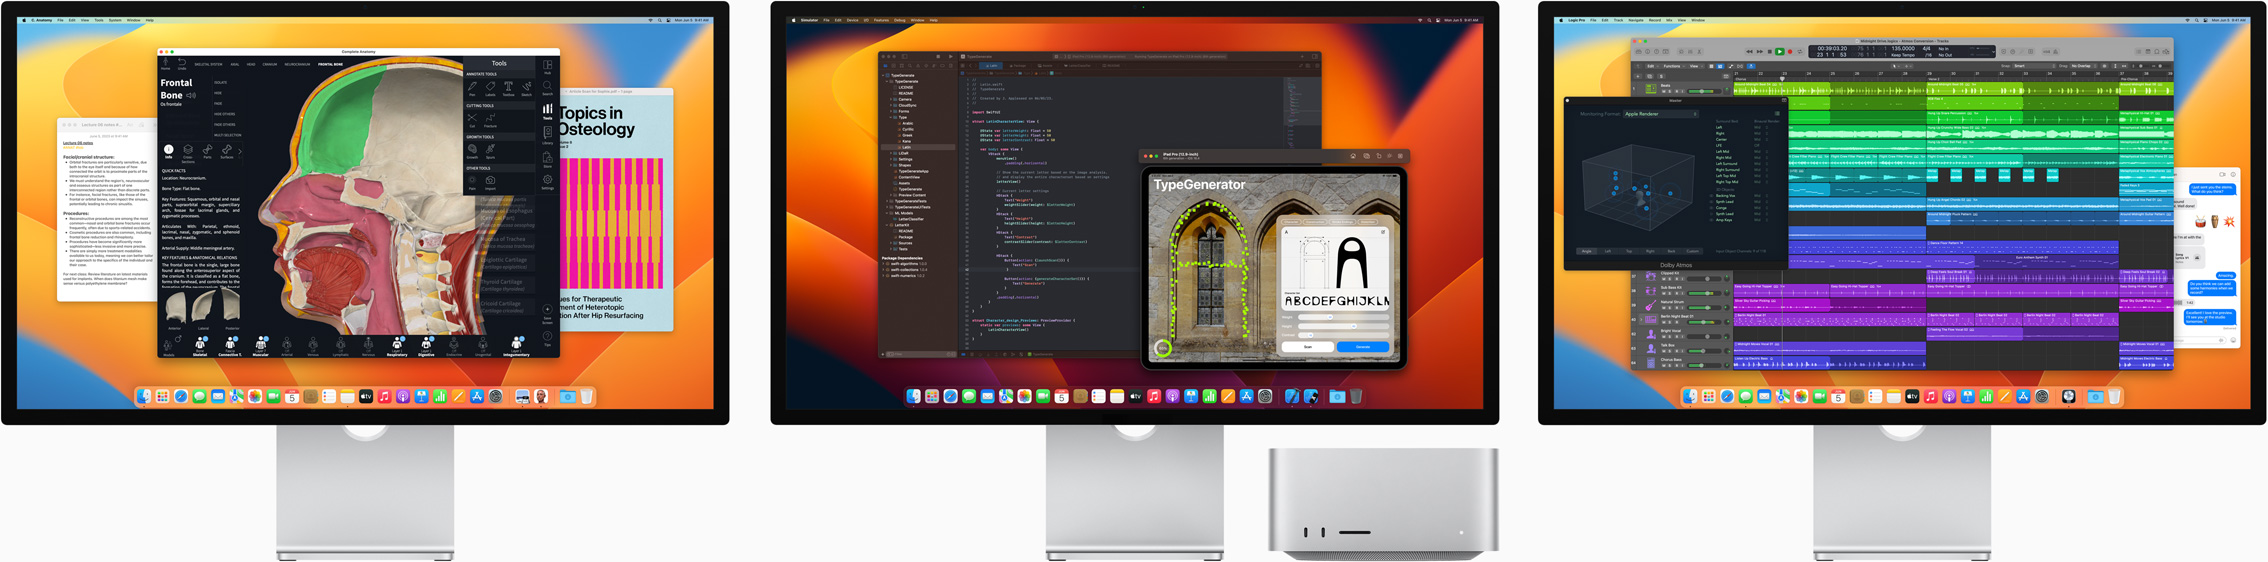 Mac Studio i trzy monitory Studio Display z różnymi aplikacjami widocznymi na ekranach